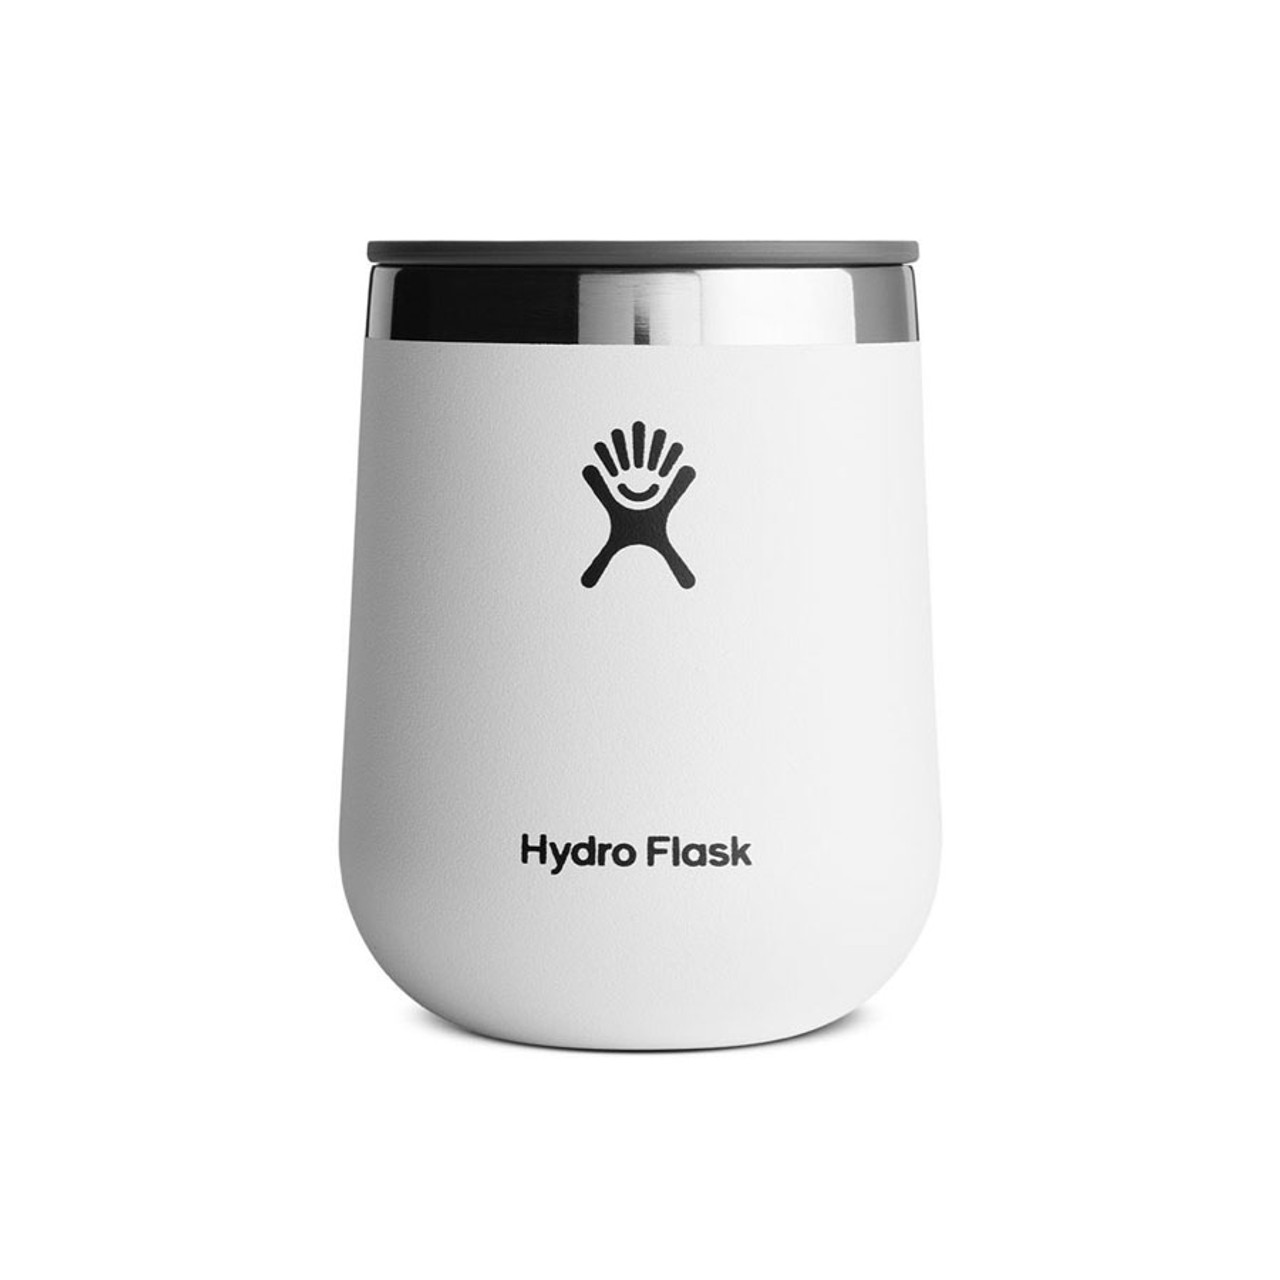 Hydro Flask Wine Tumbler - 10oz